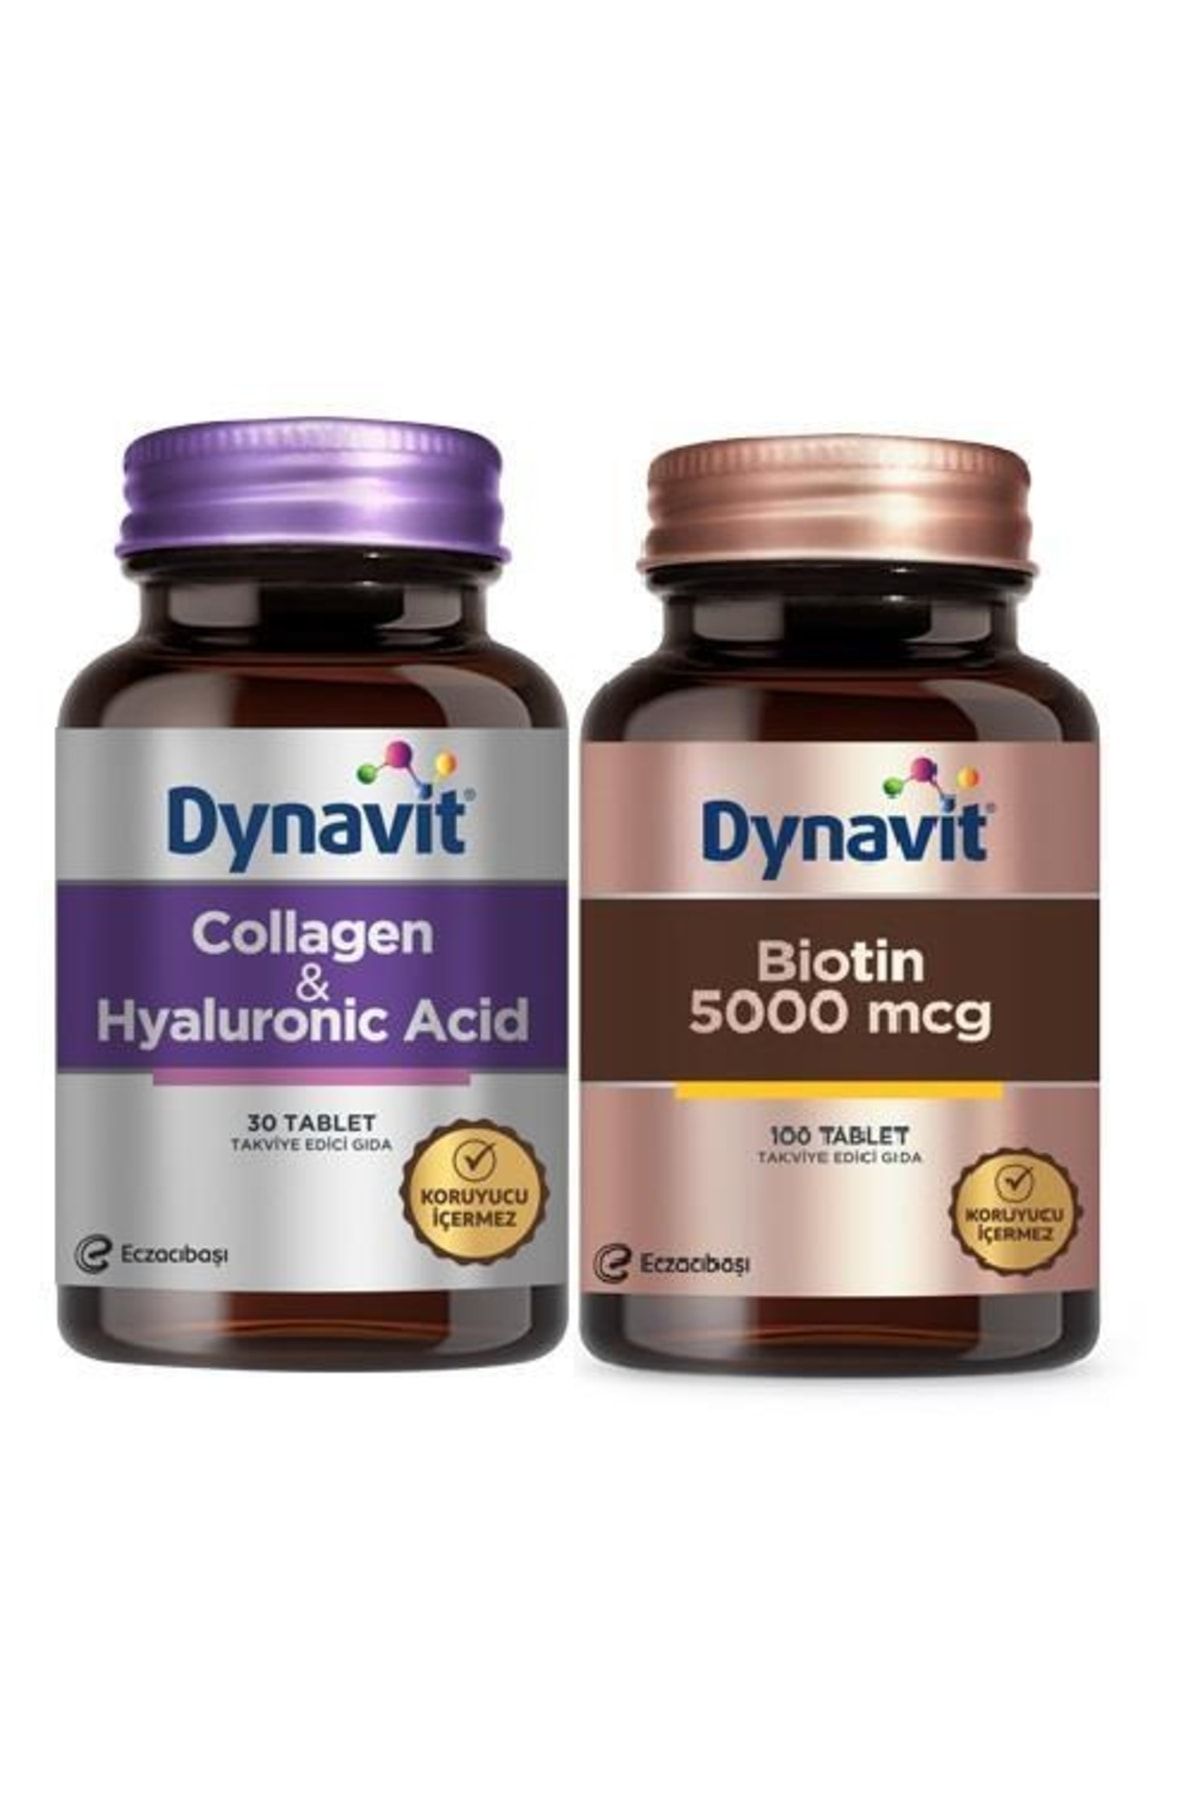 Dynavit Collagen Hyaluronic Acid 30 Tablet + Biotin 5000 Mcg 100 Tablet